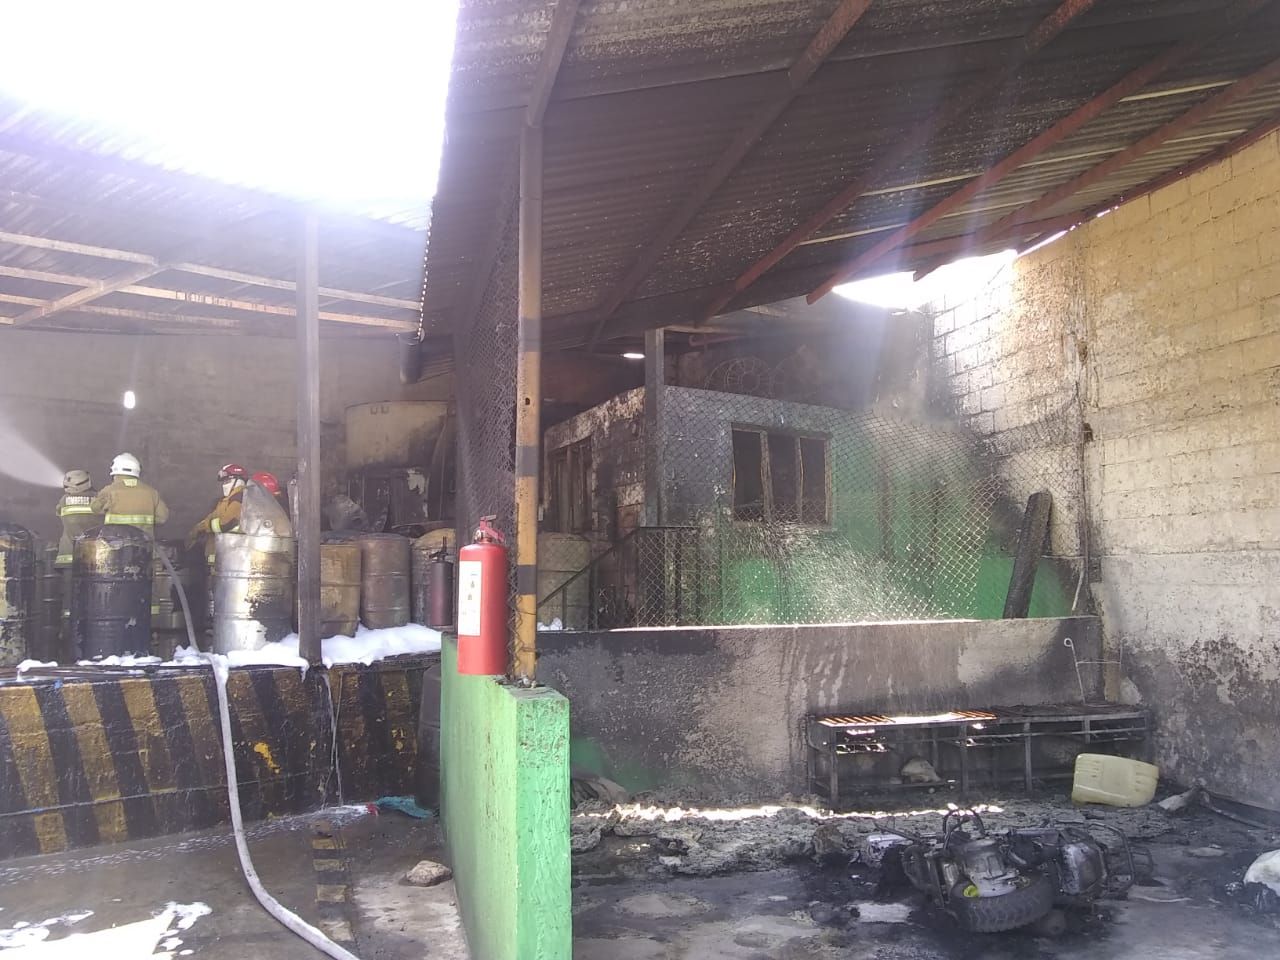 #Tragedia en Tianguistenco, murieron calcinados dos obreros en incendio en la empresa "Quimica Claus"